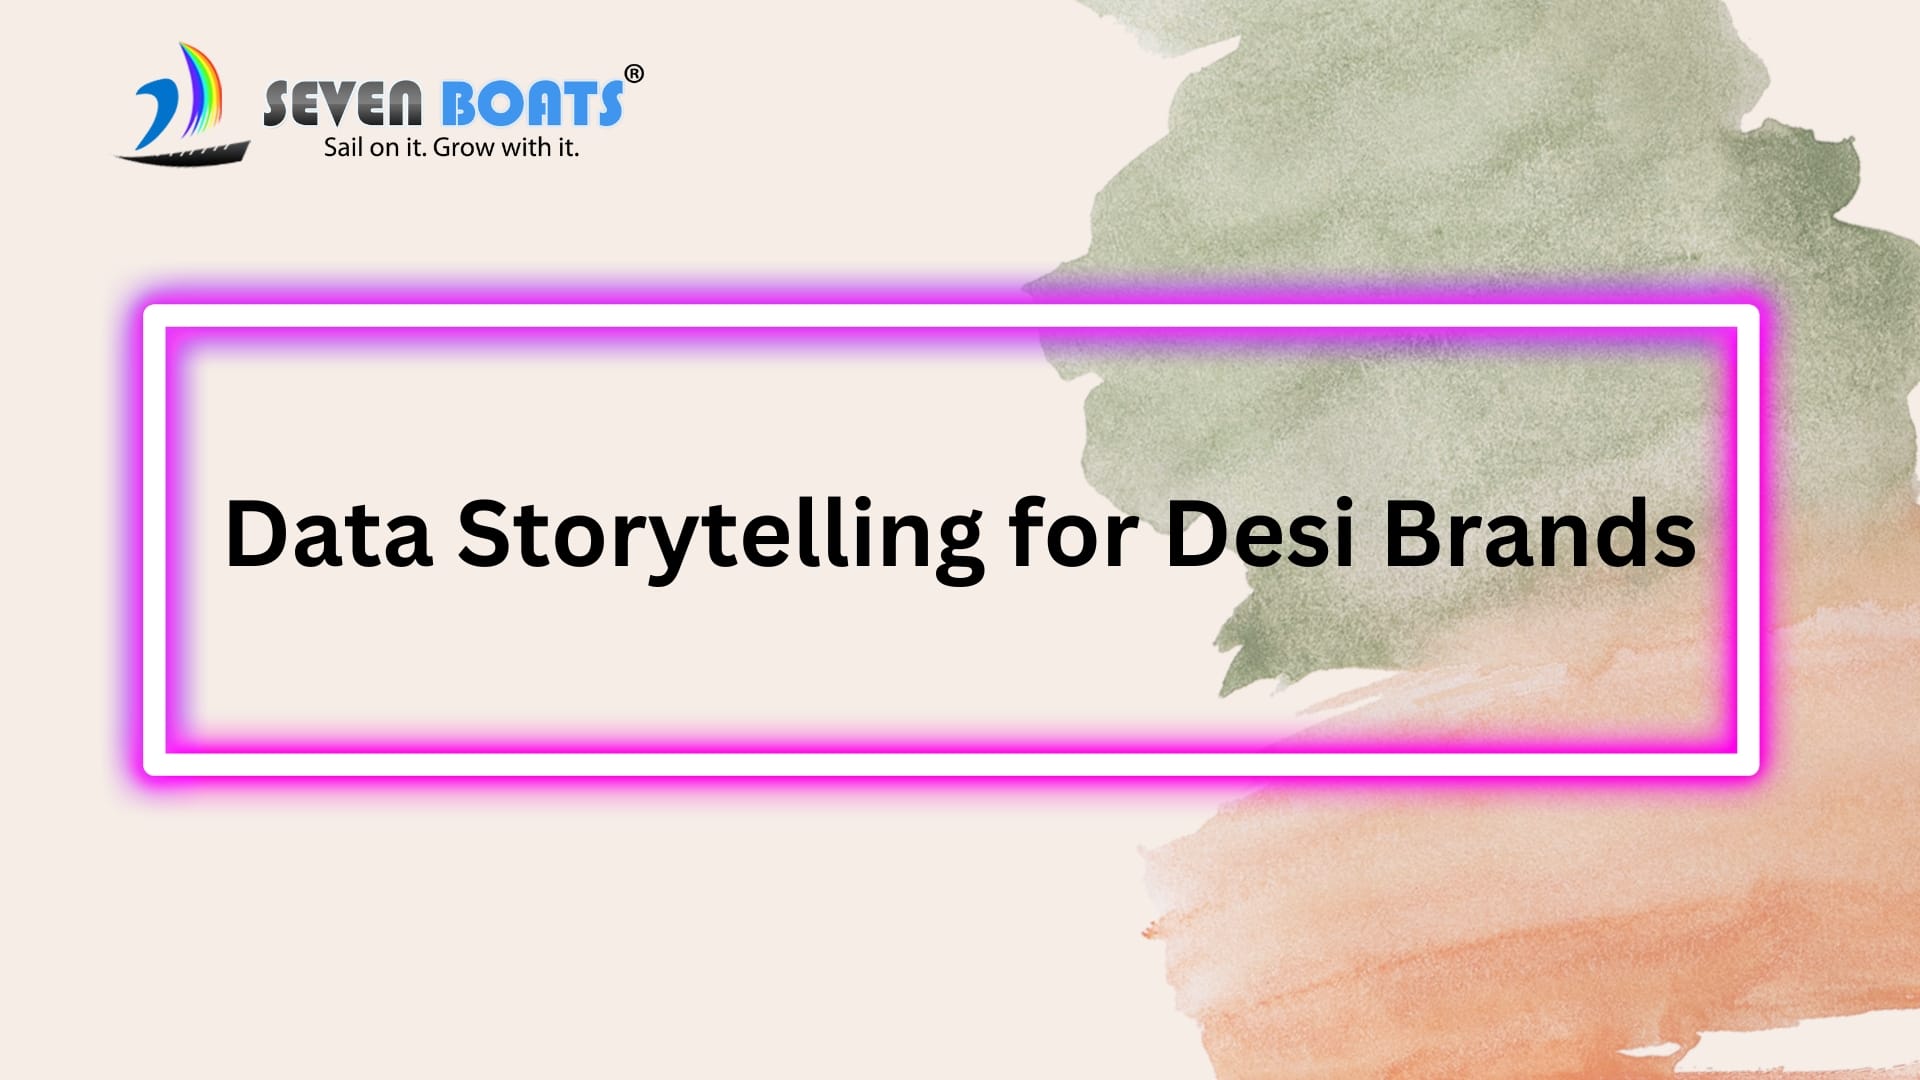 Data Storytelling for Desi Brands.